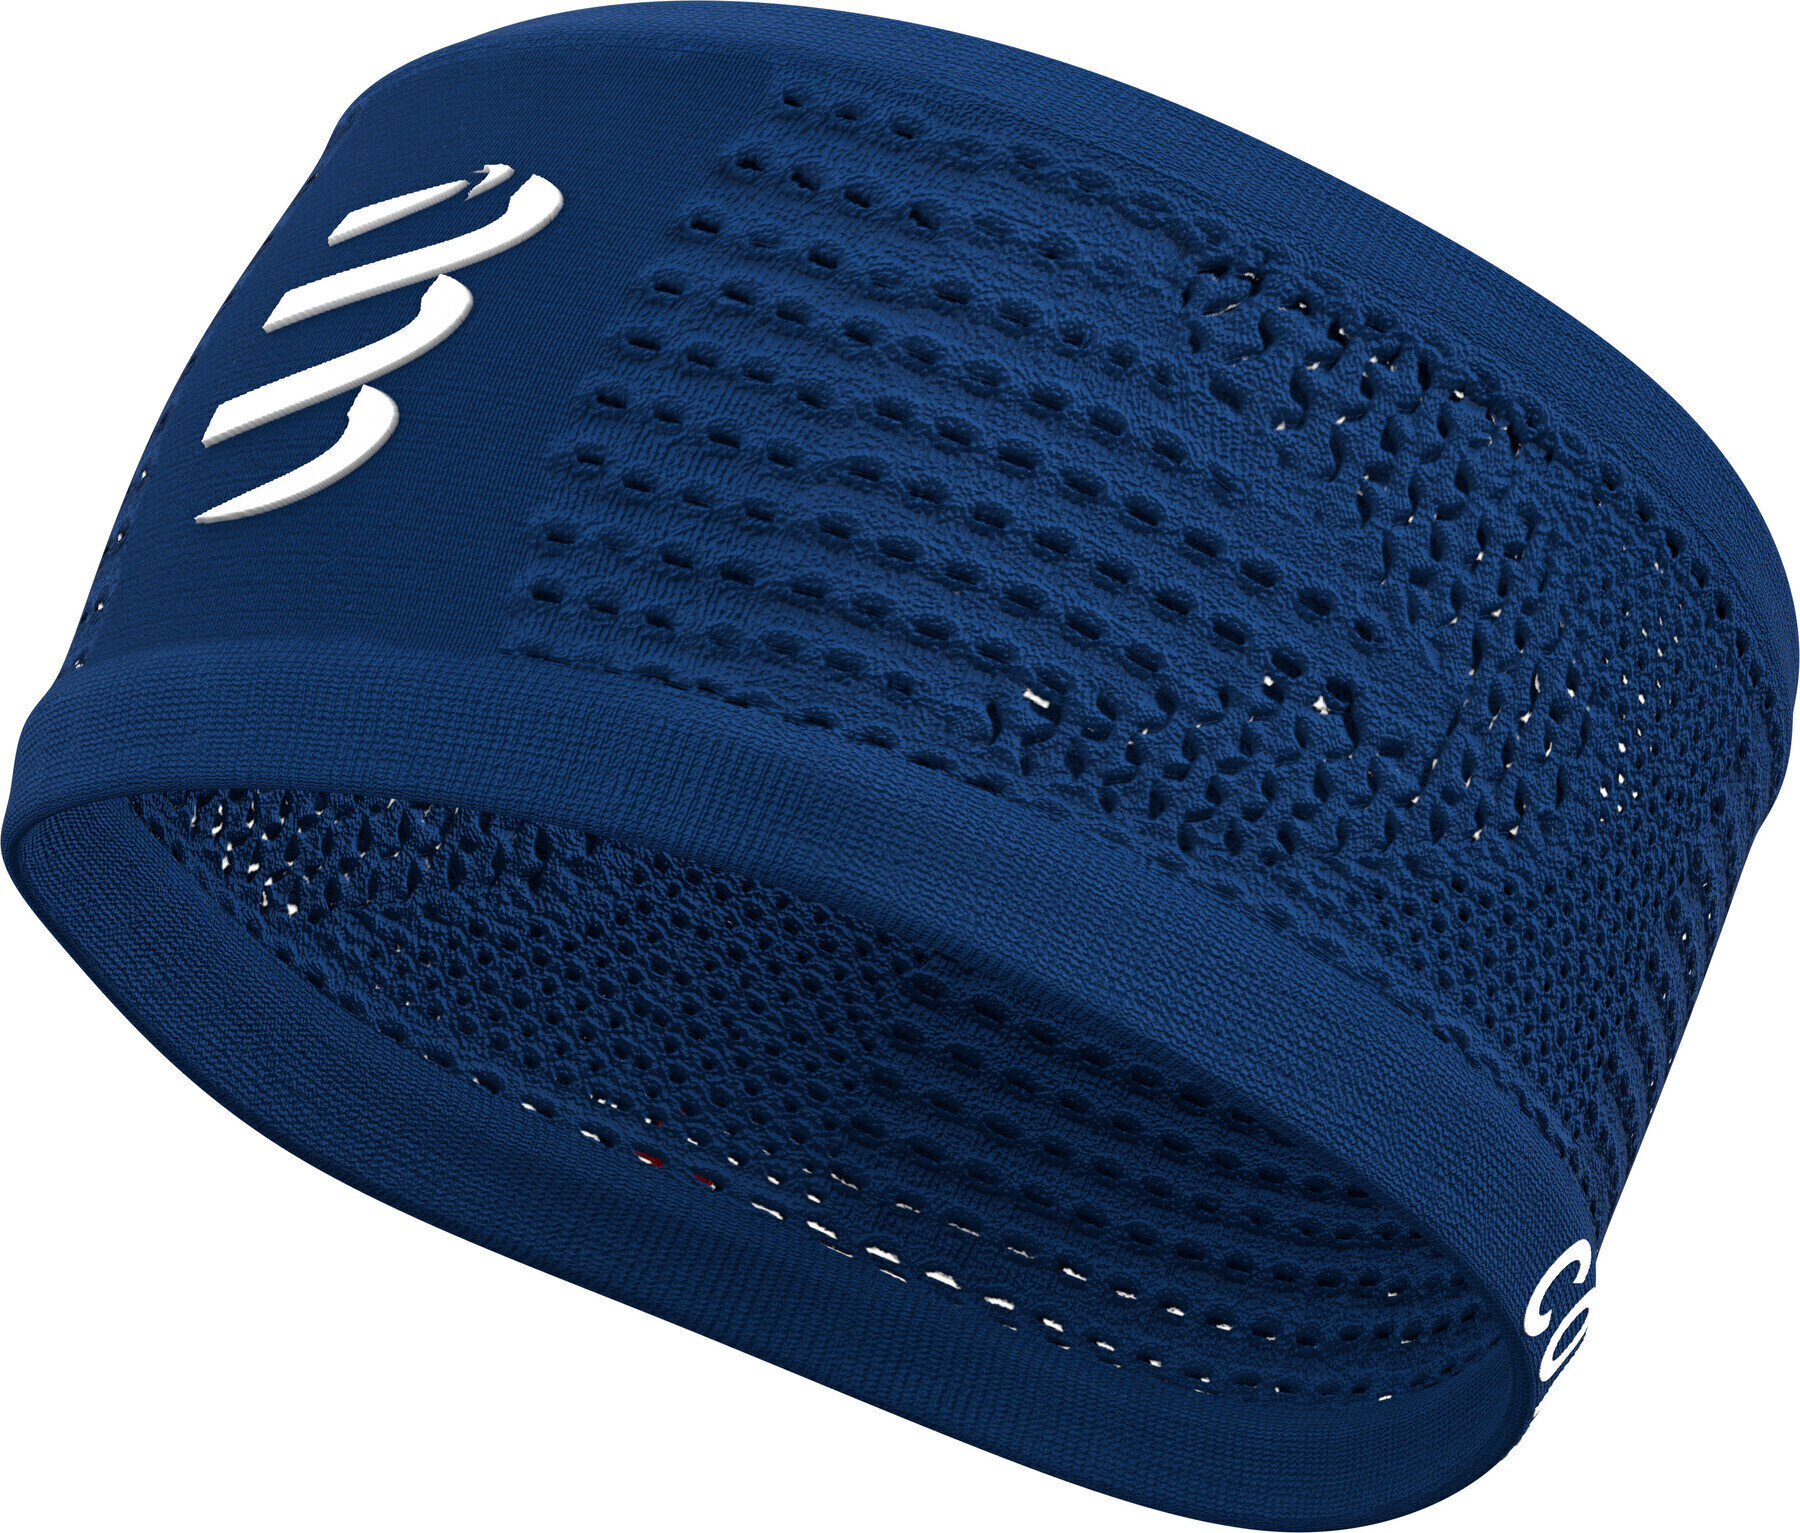 Pannband för löpning Compressport Headband On/Off Blue Lolite UNI Pannband för löpning